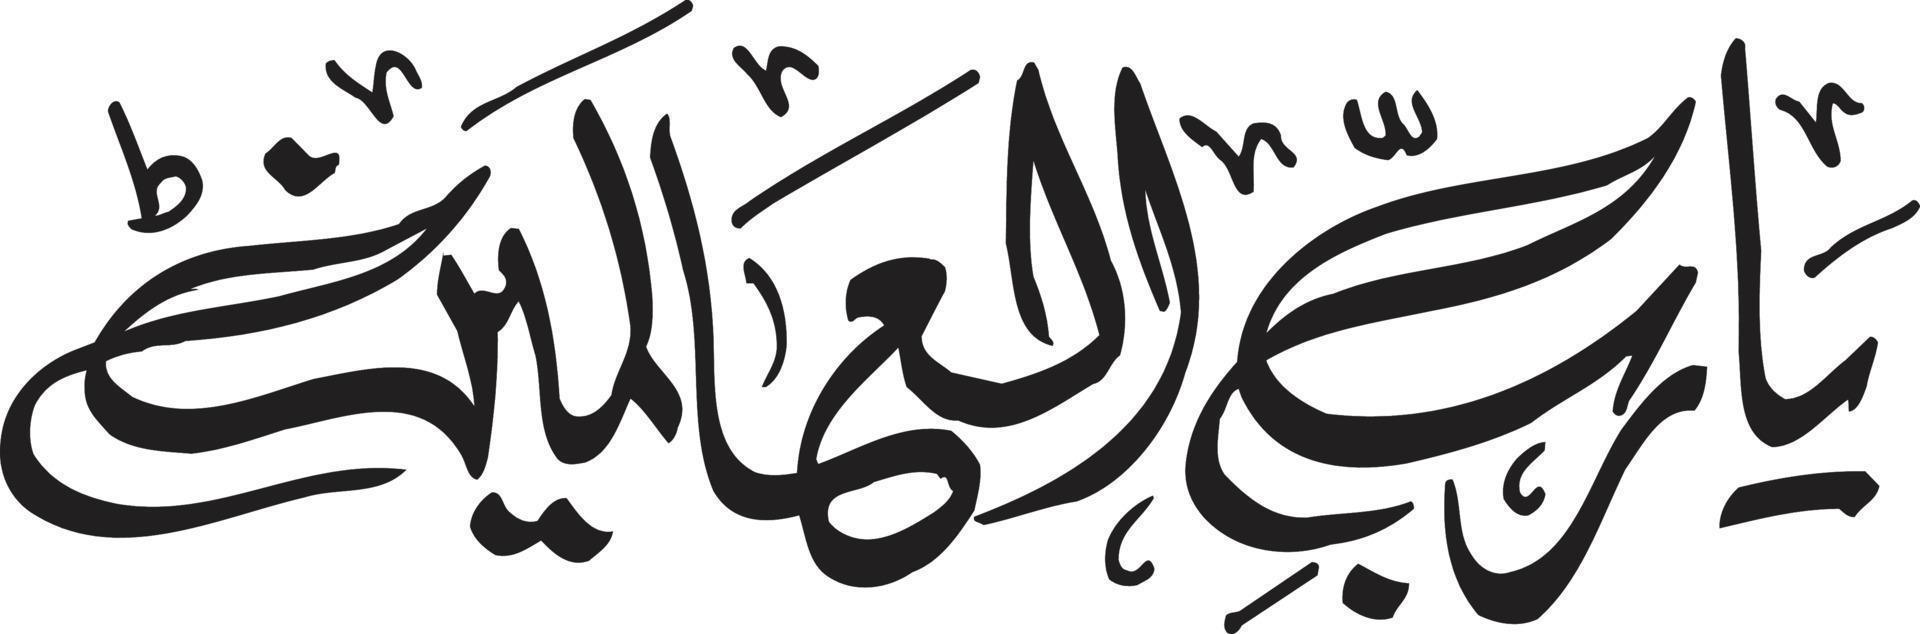 ya rab alalameen titolo islamico urdu Arabo calligrafia gratuito vettore